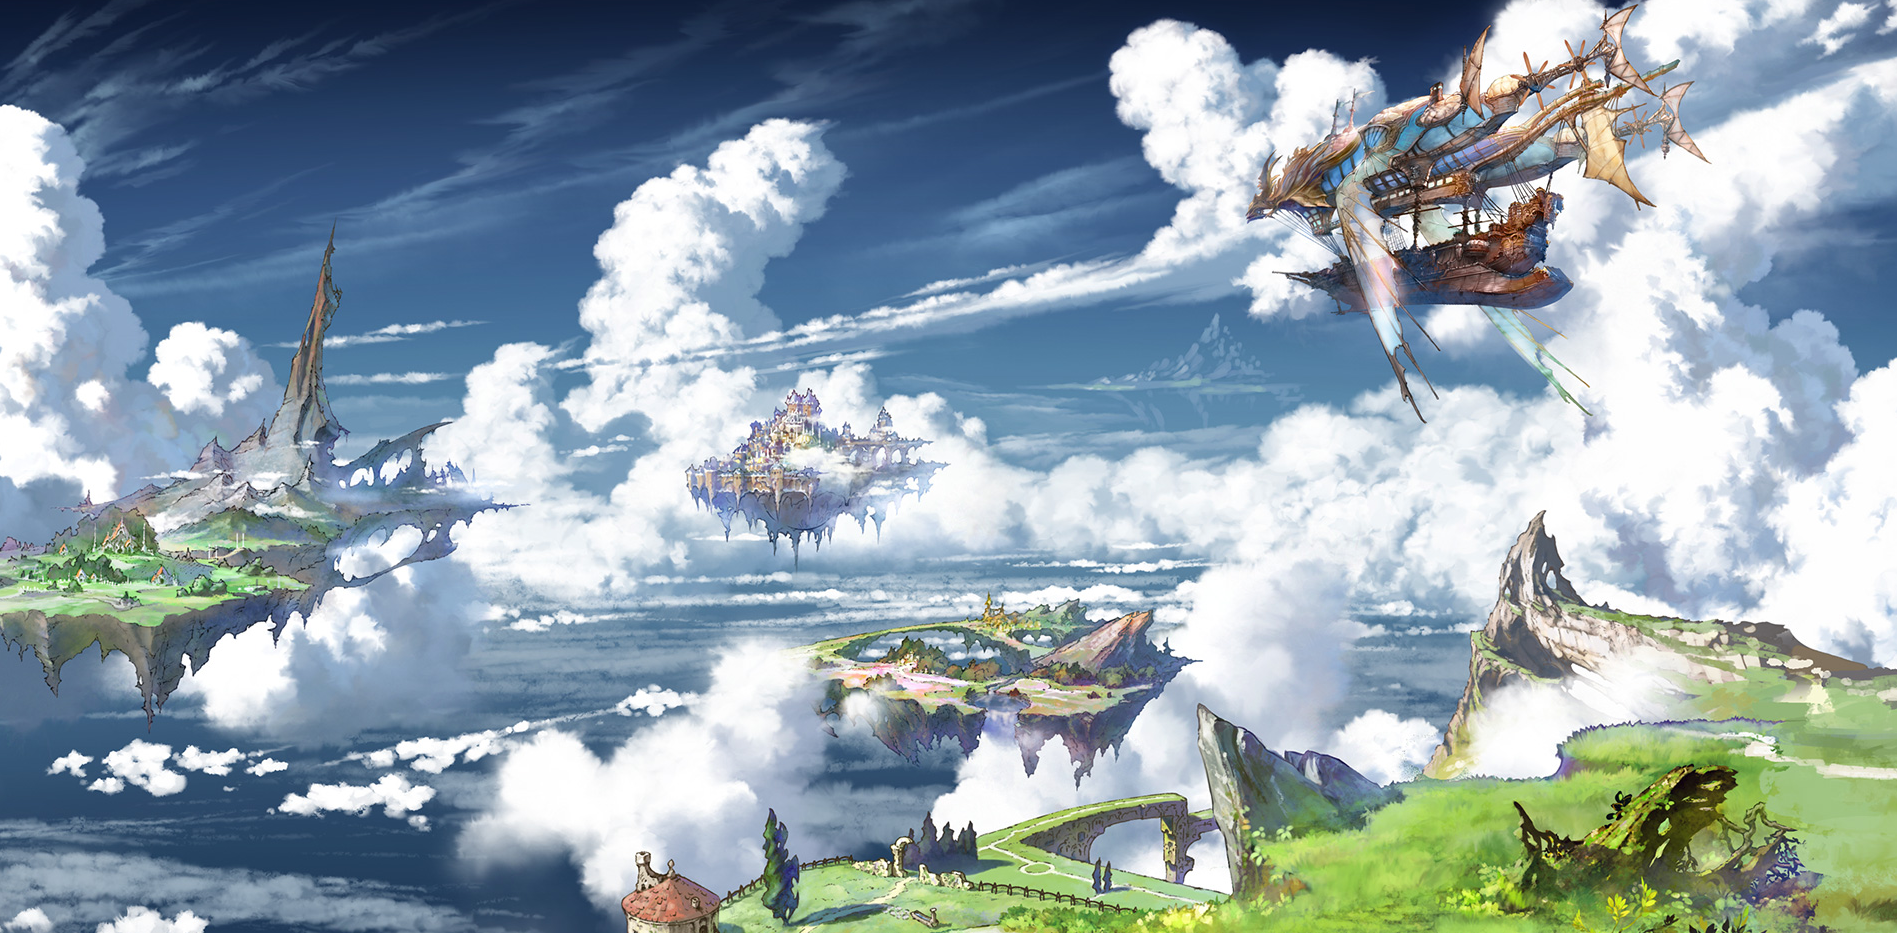 granblue fantasy wallpaper,cielo,nube,cg artwork,ilustración,mundo